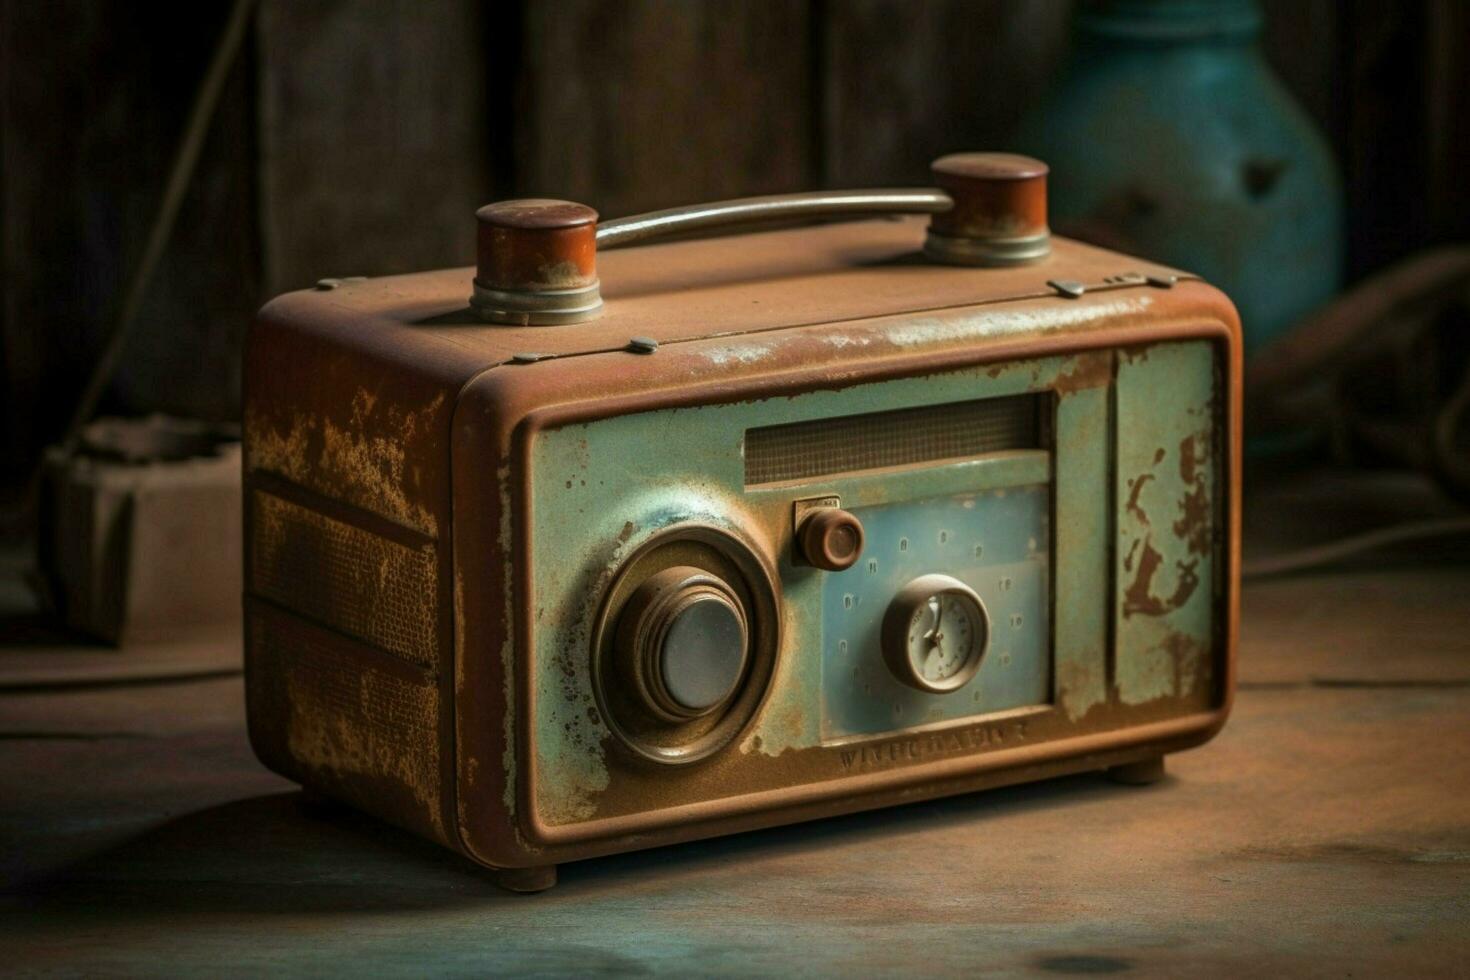 un vieux façonné radio avec une rouillé bouton photo